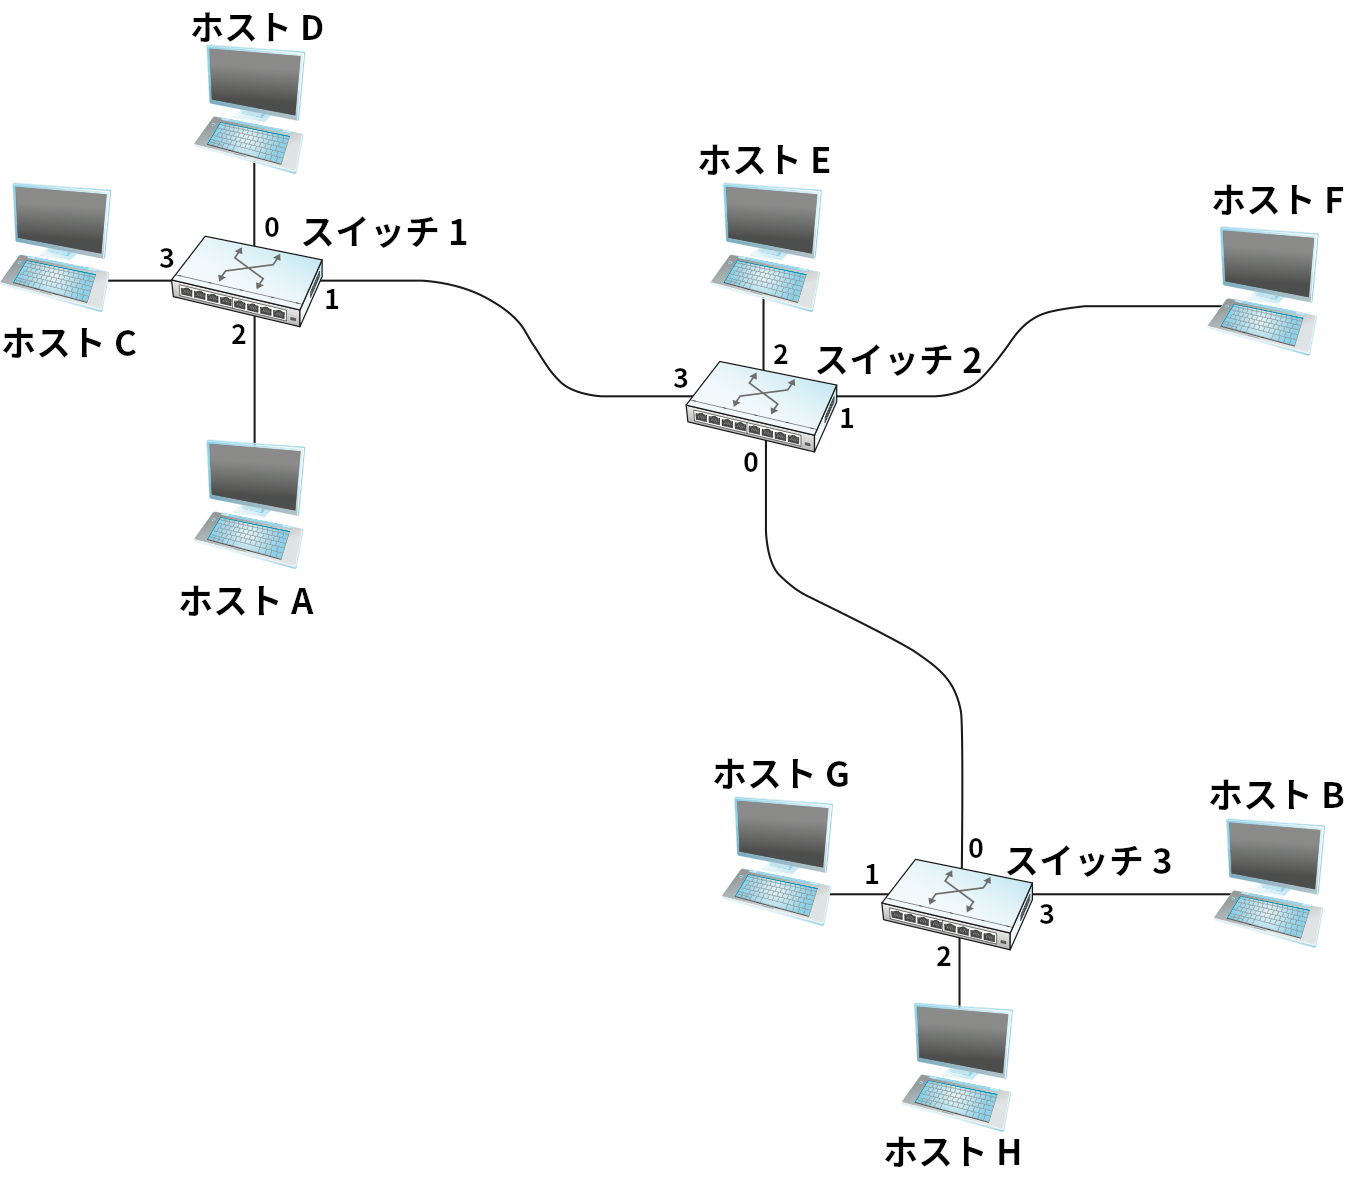 データグラムの転送: ネットワークの例